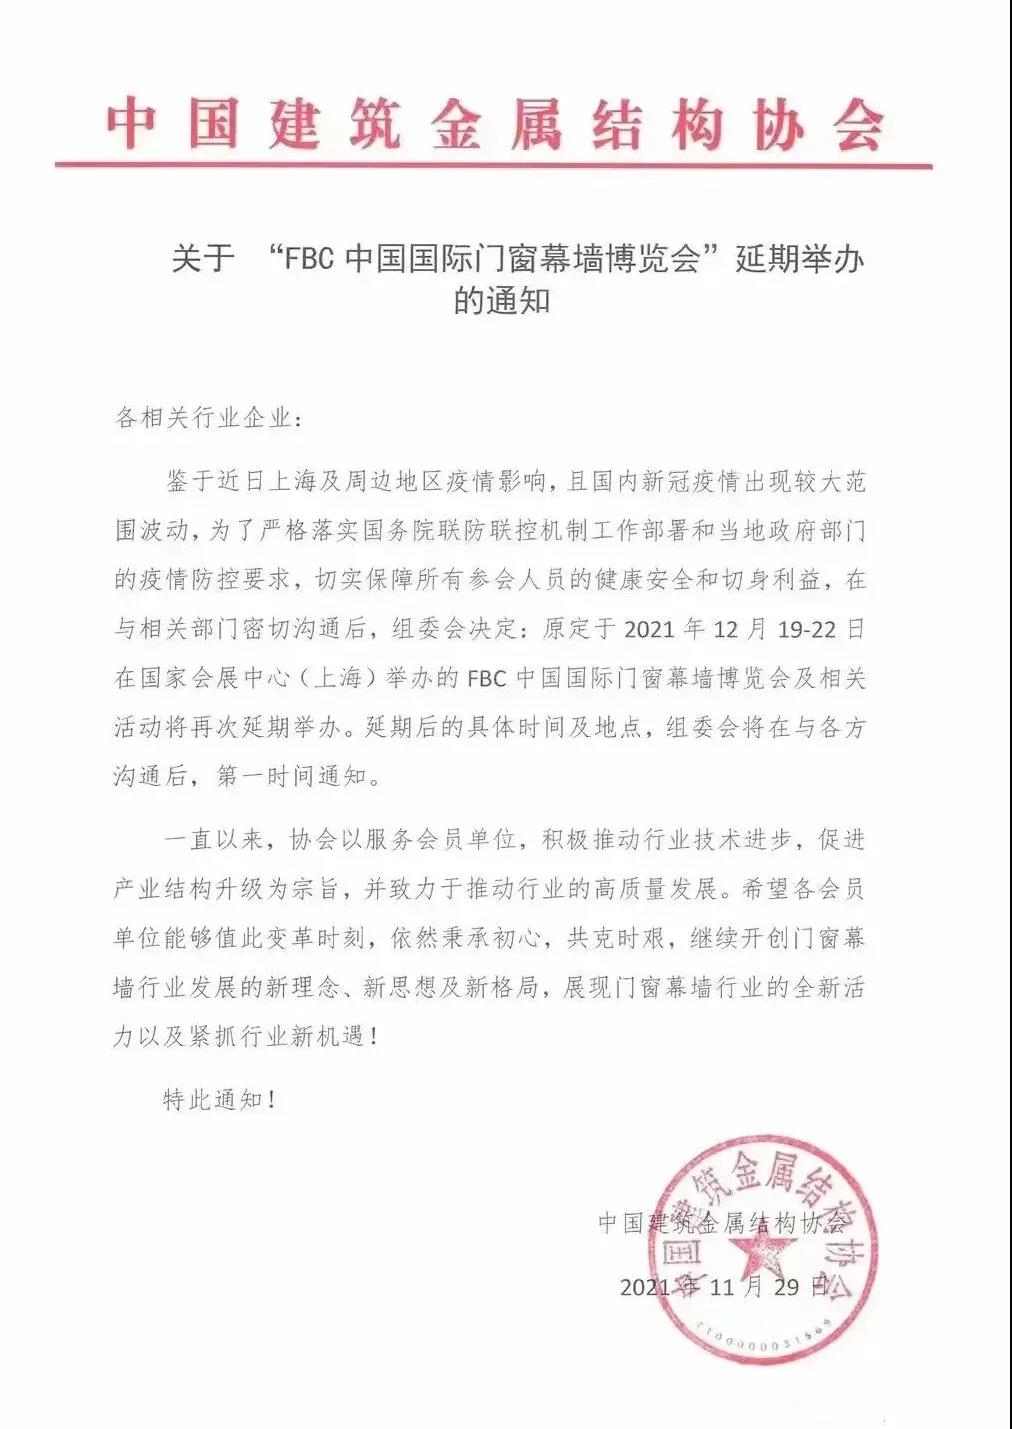 延期通知 I FBC 2021中國國際門窗幕墻博覽會再延期